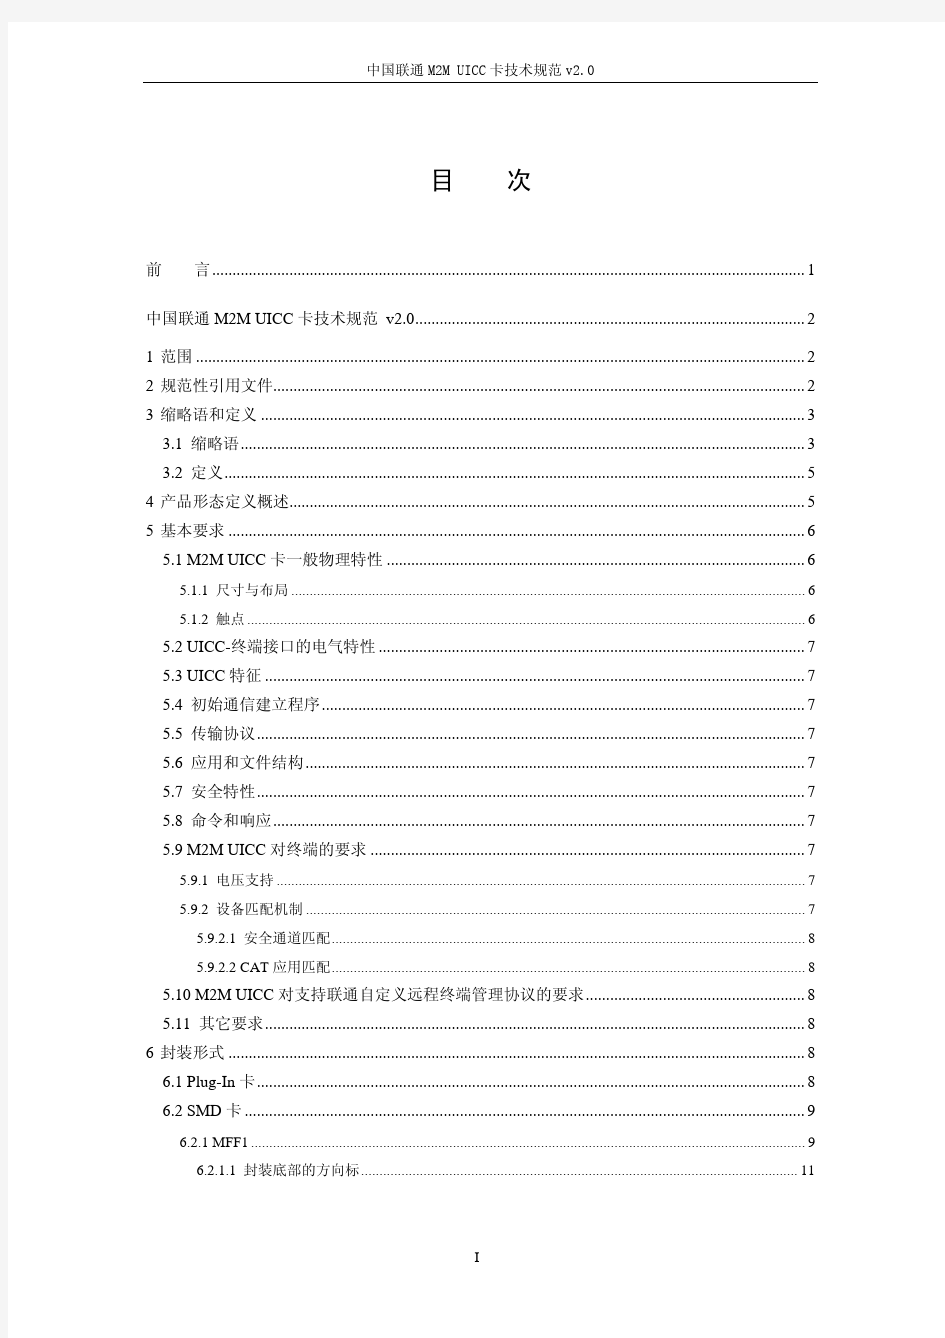 195-2011 中国联通M2M UICC卡技术规范V2.0